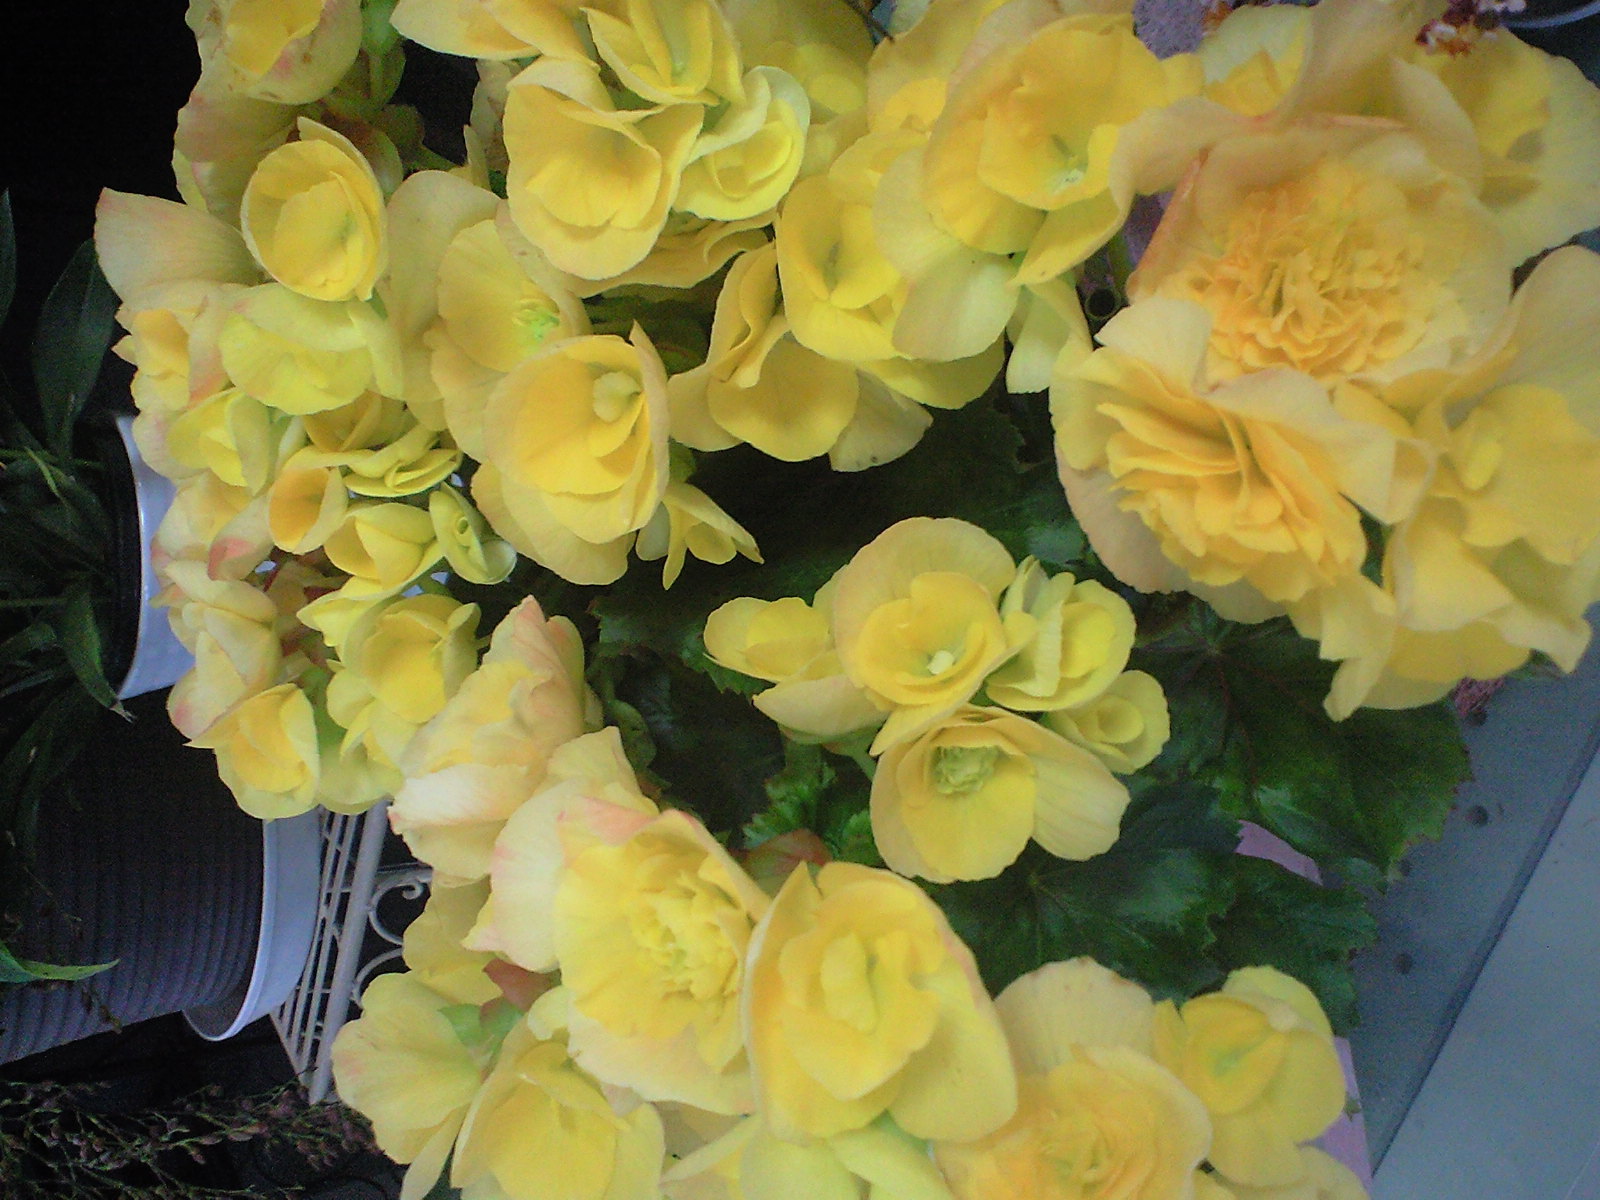 リーガスベゴニア 花ログ 園芸の写真 大阪 北摂 東京 世田谷 街 庭 庭園の花々 ガーデニング